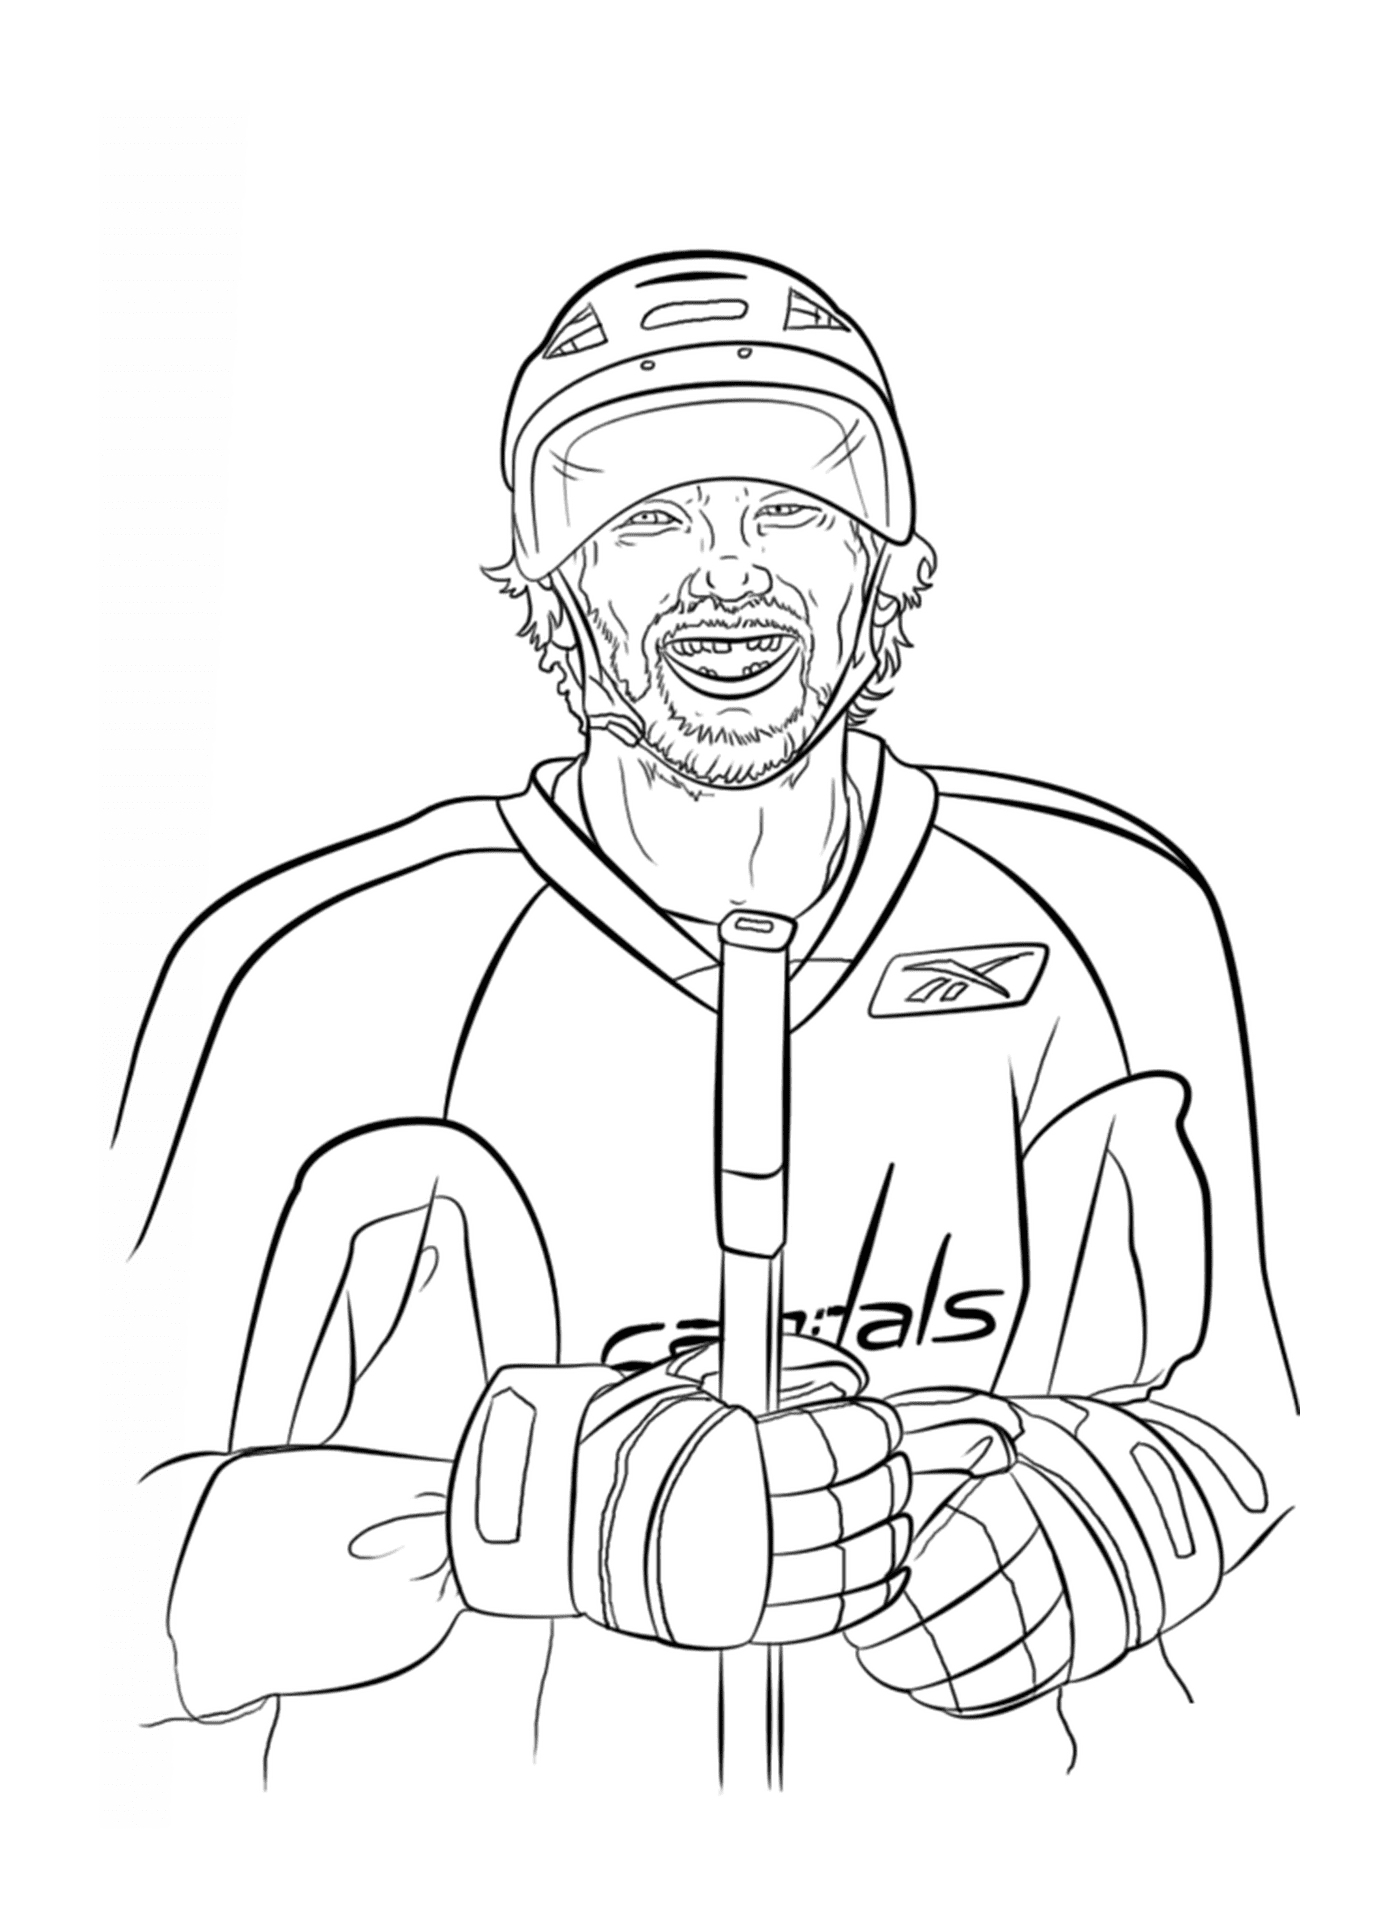  Alex Ovechkin, giocatore di hockey 